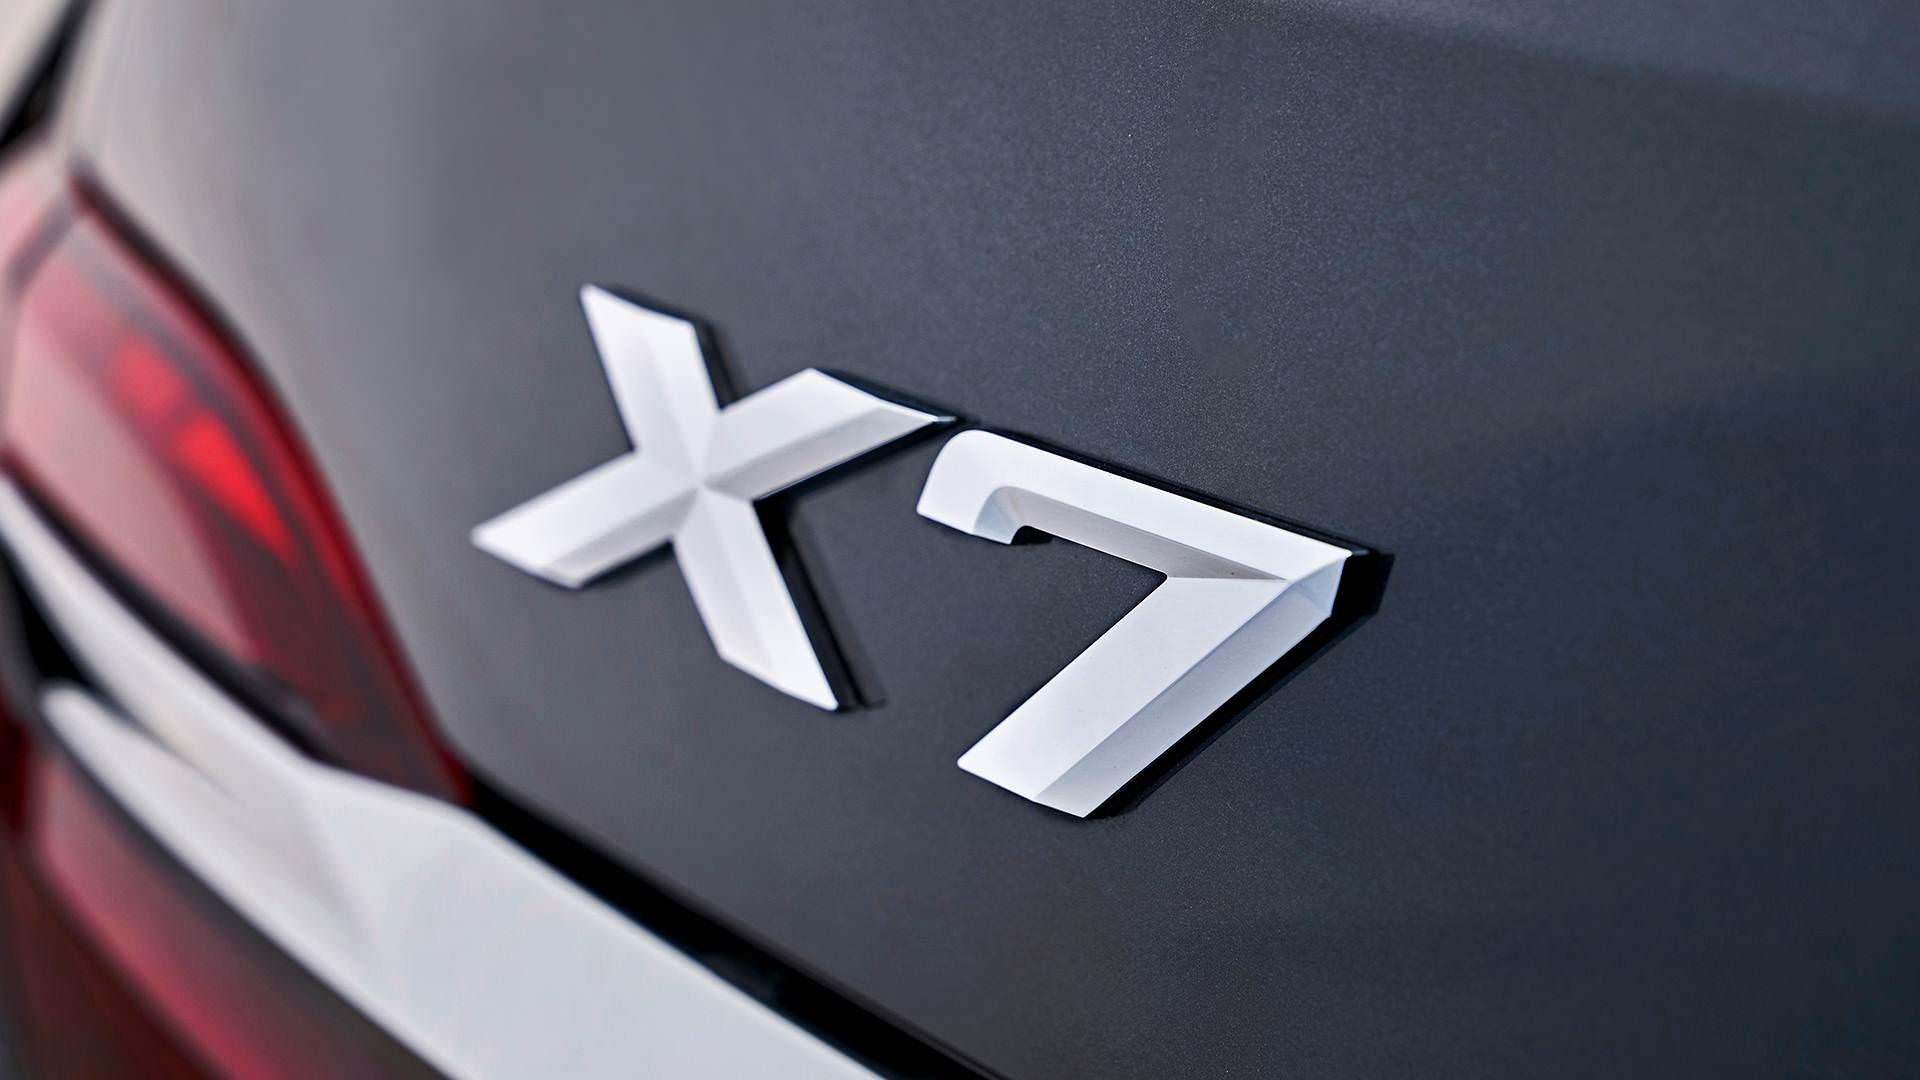 مرجع متخصصين ايران BMW X7 2019